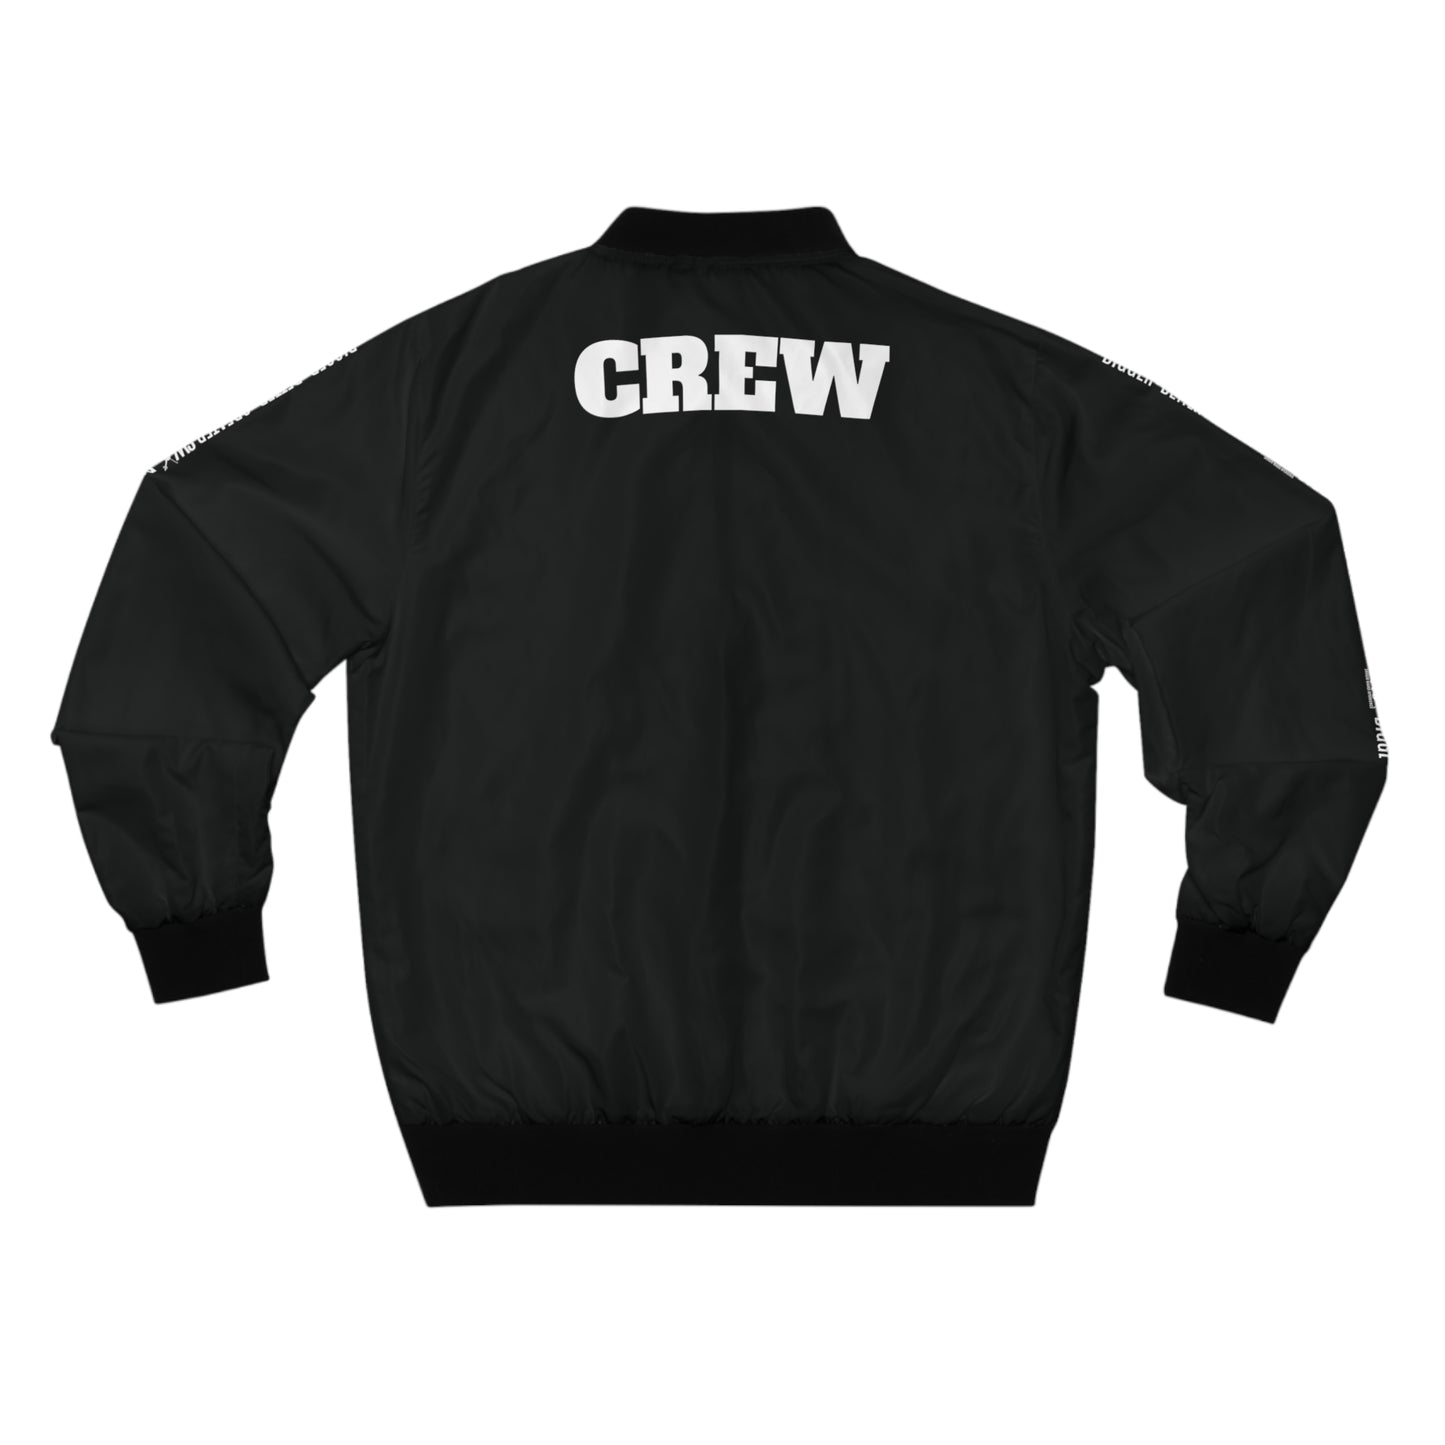 SWX "CREW" Bomber Jacket - Black